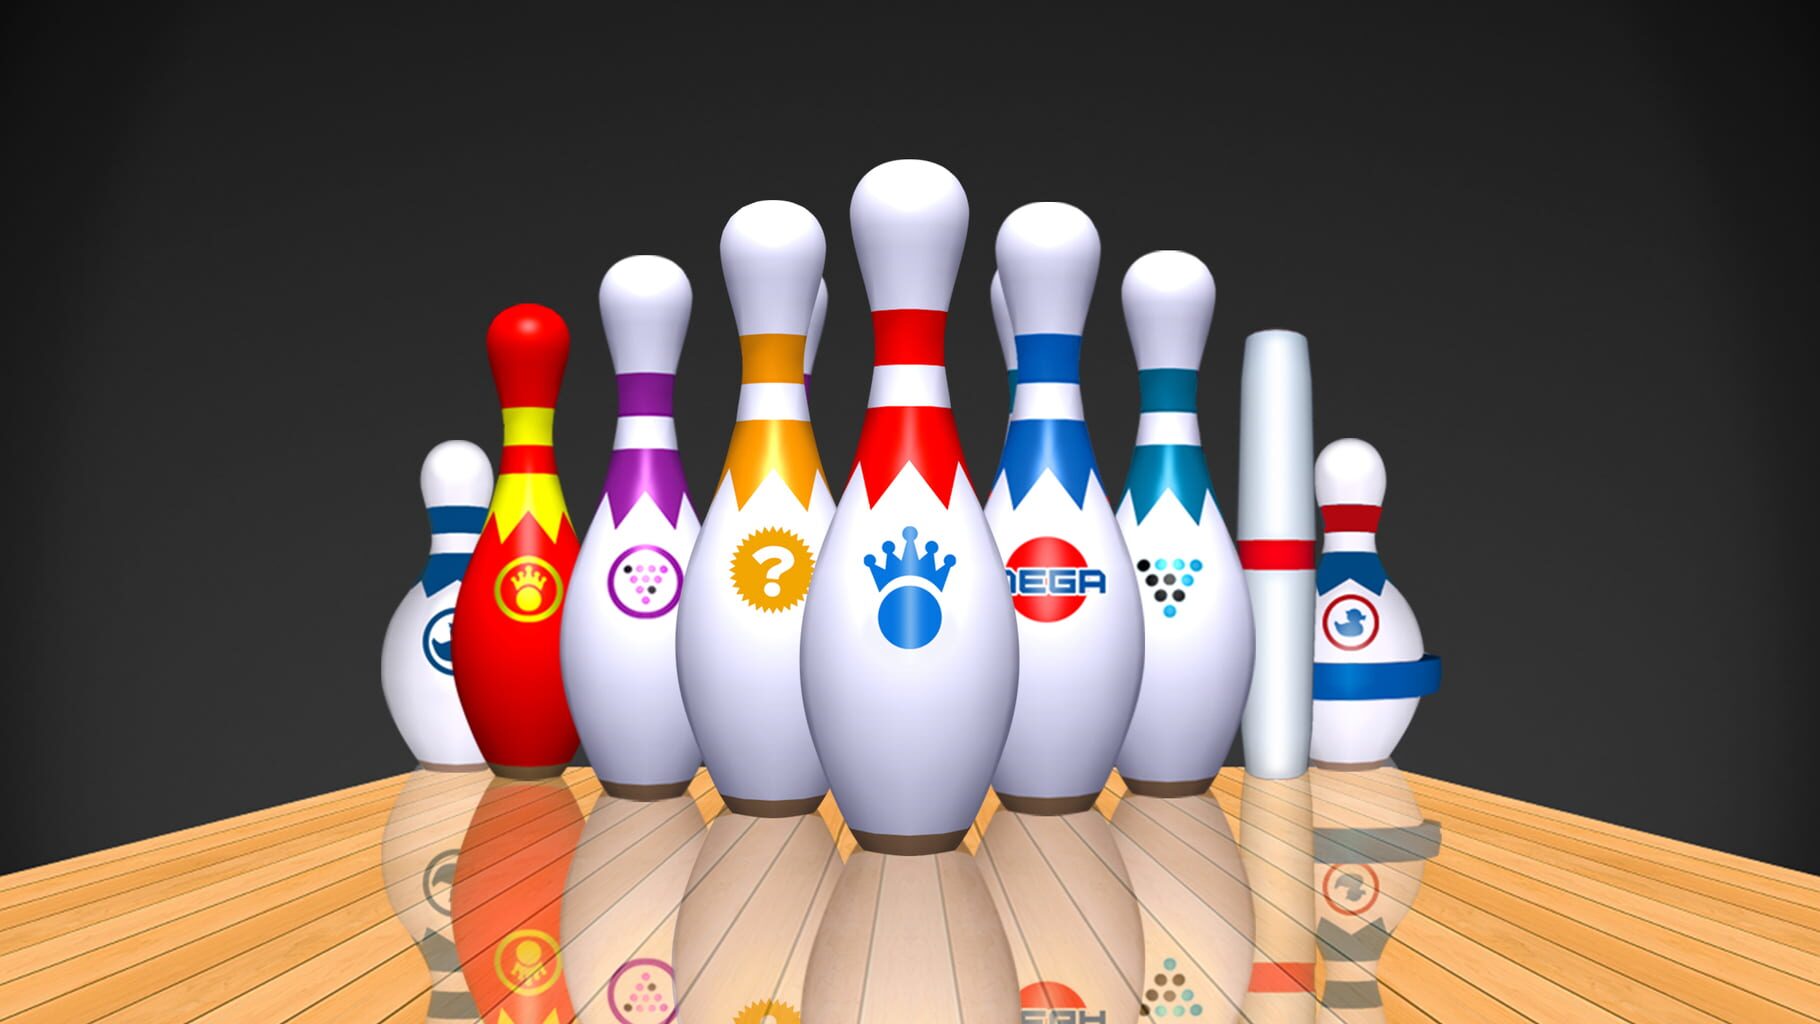 Strike! Ten Pin Bowling artwork